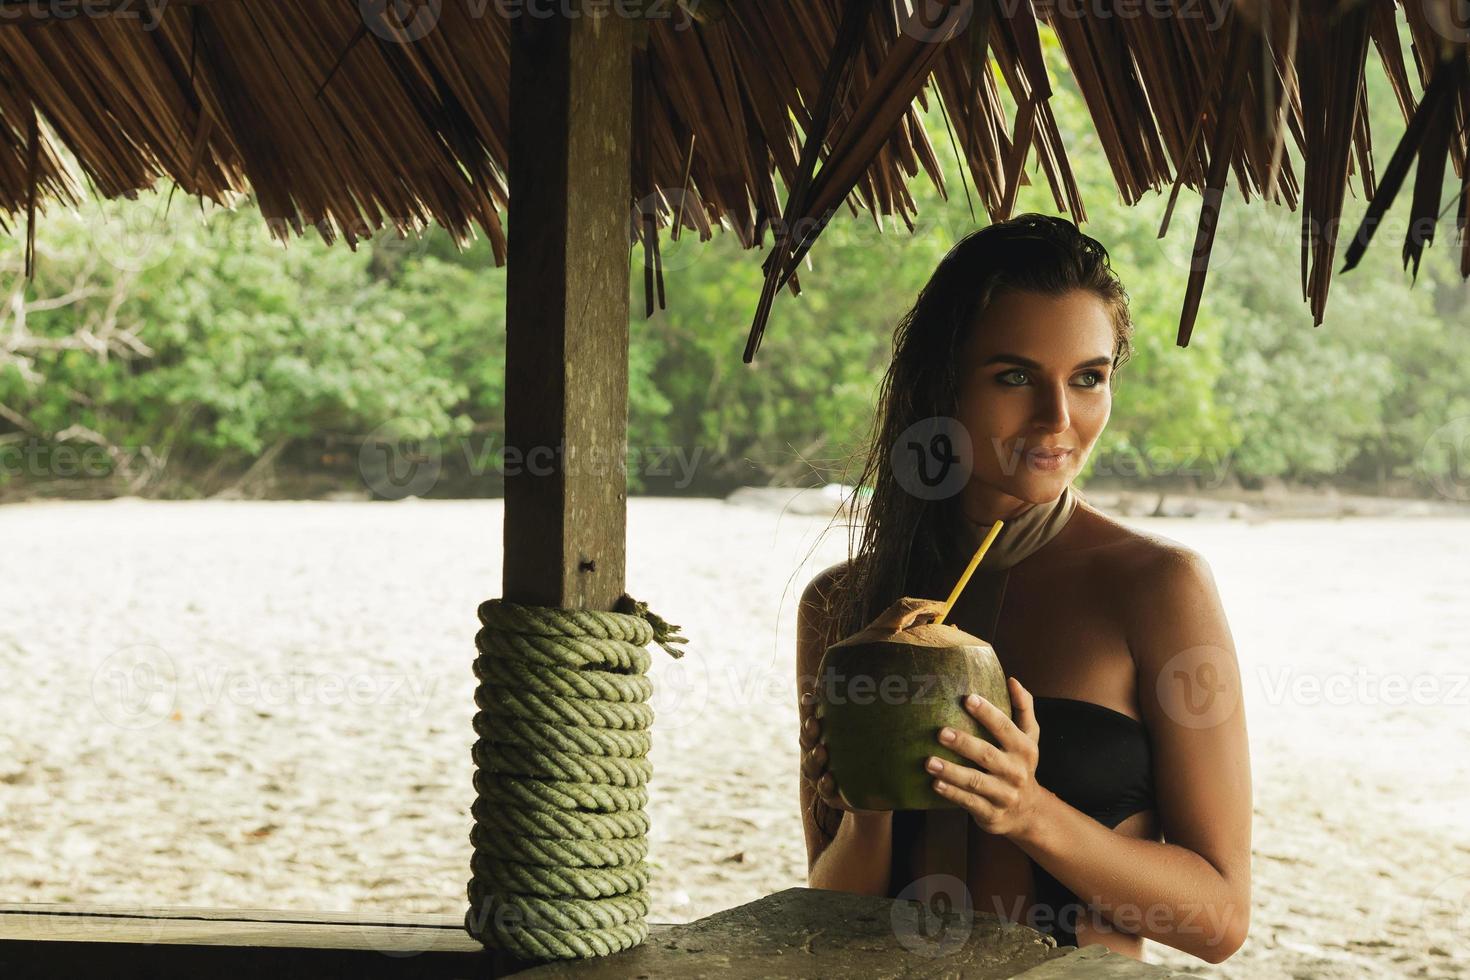 contento donna è godendo Noce di cocco bevanda nel il spiaggia bar foto